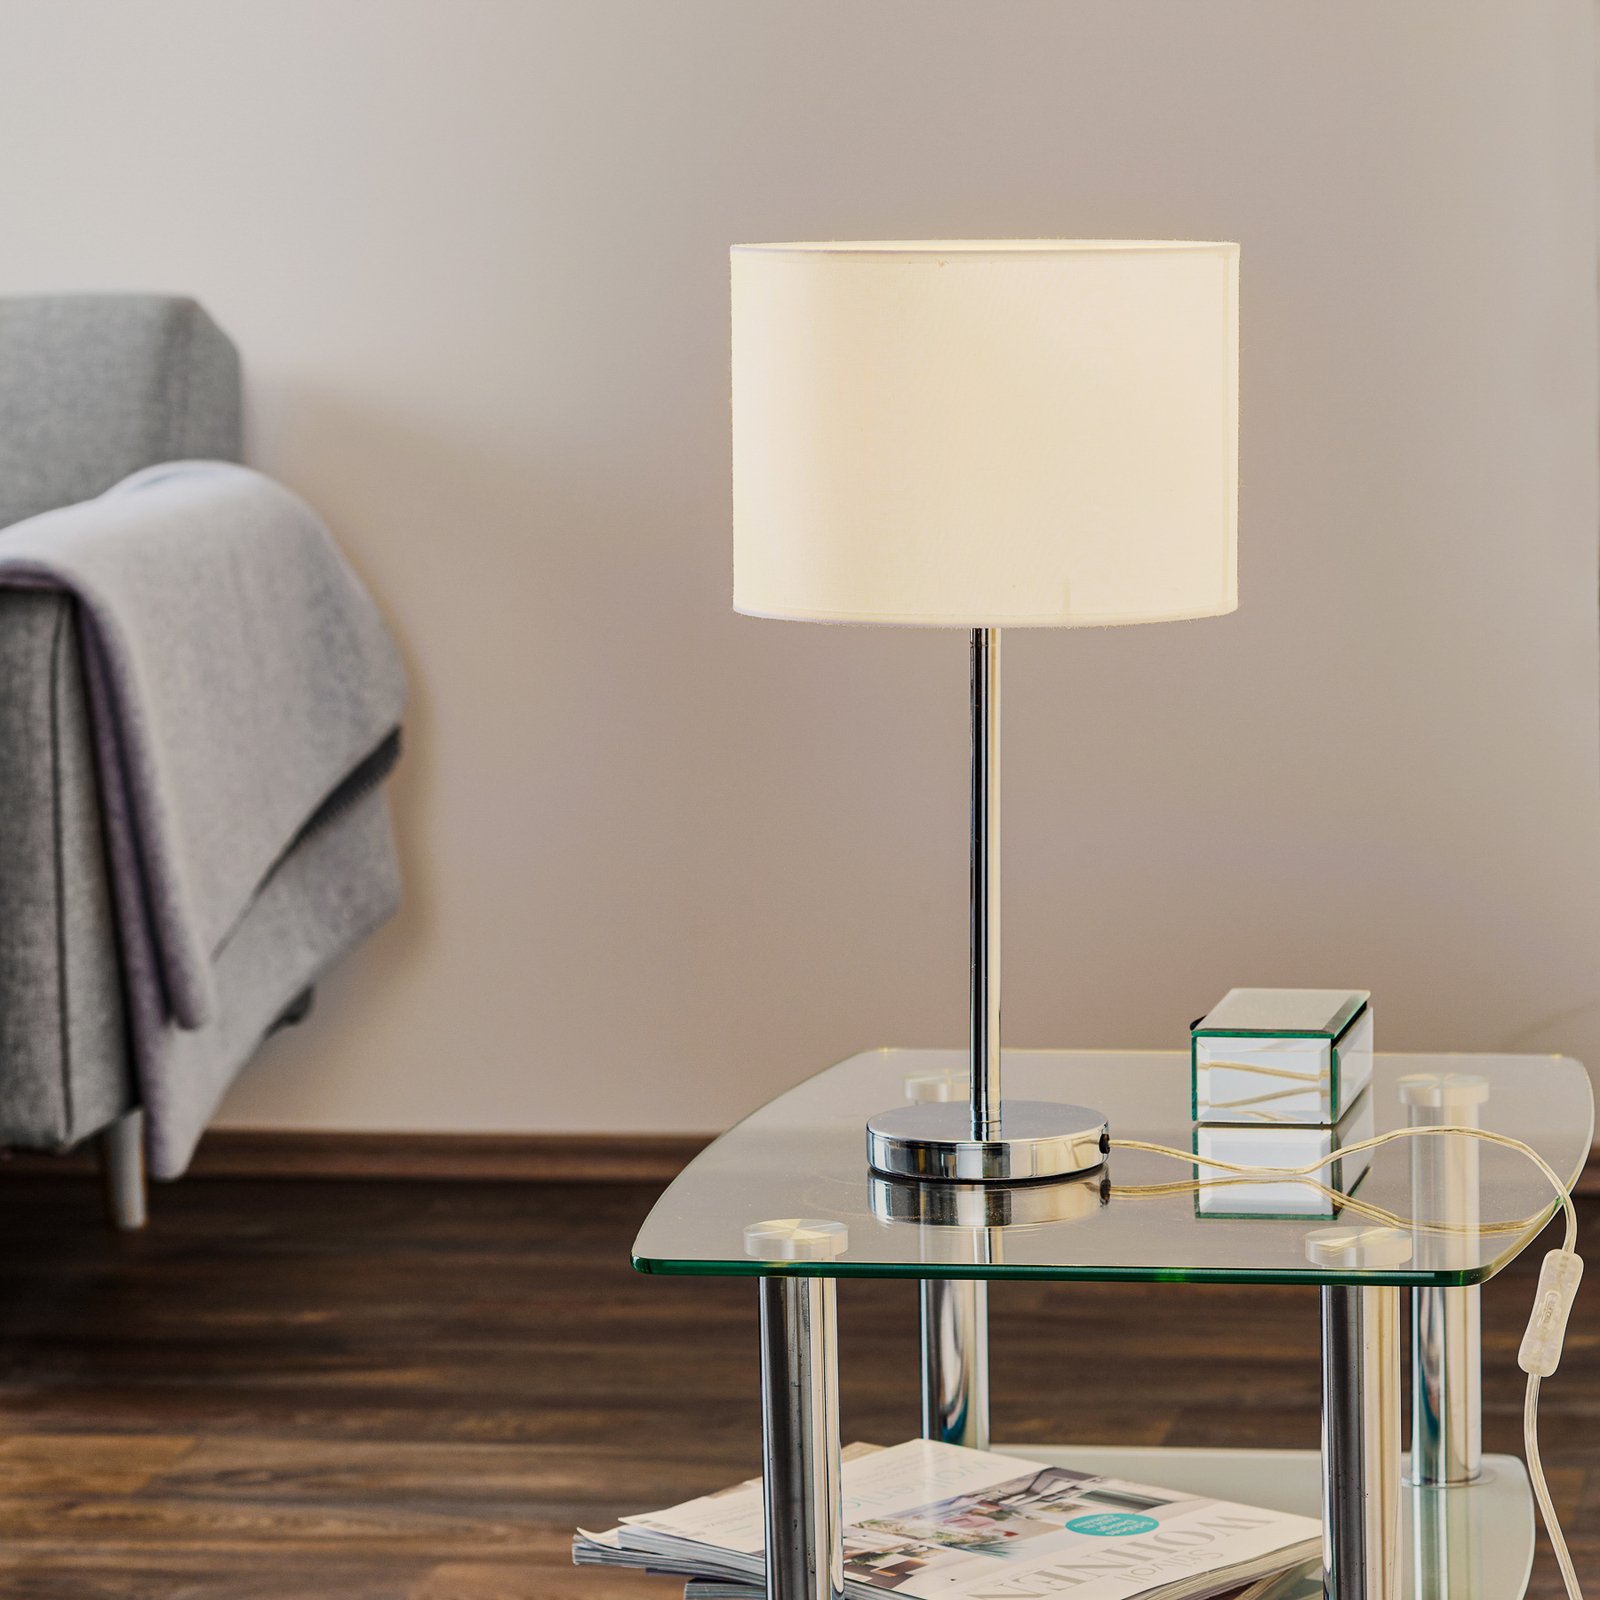 Lampa stołowa Maarit z kloszem tekstylnym, biała